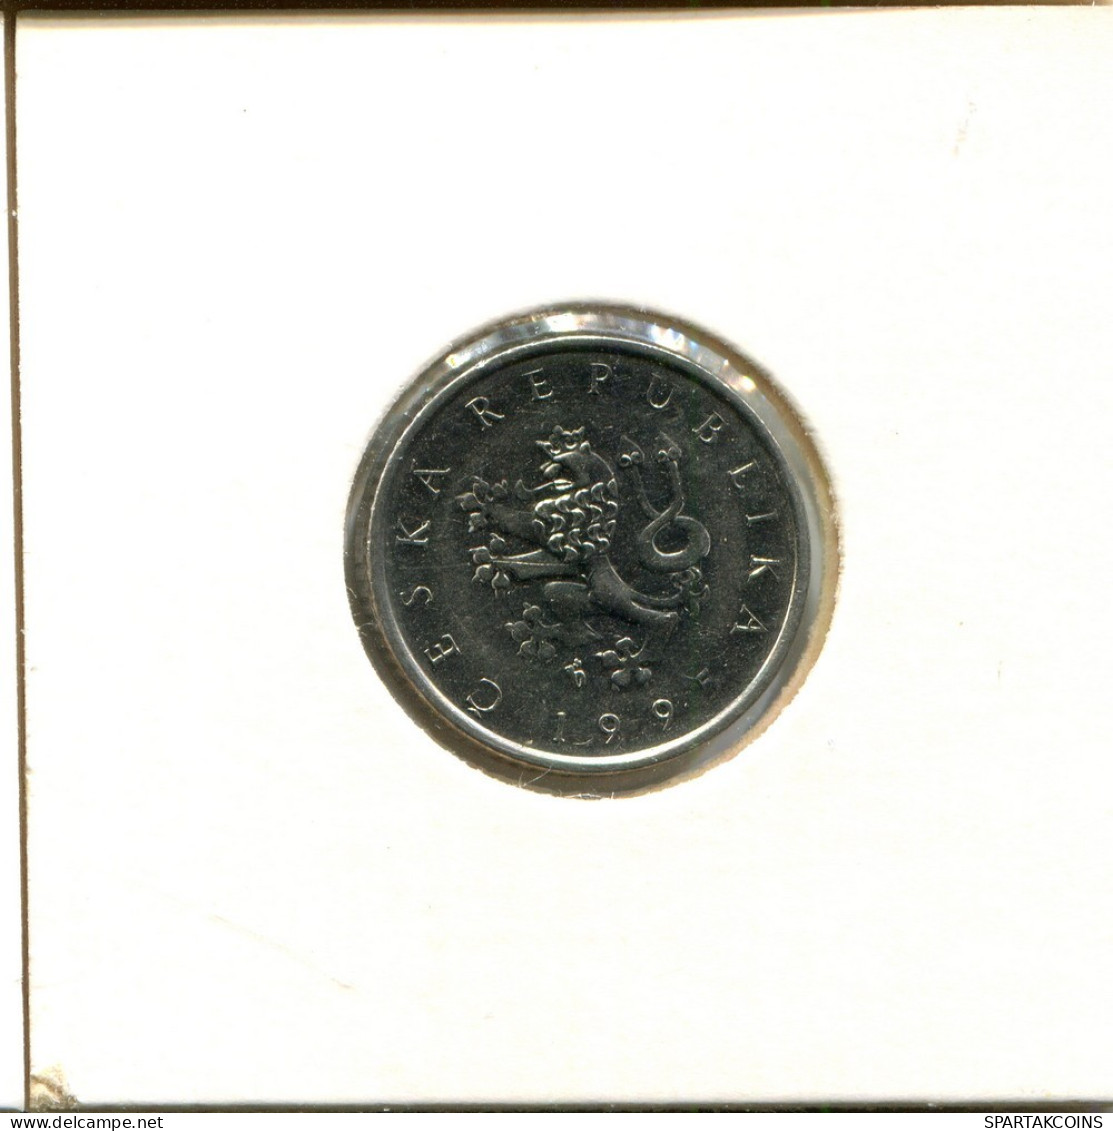 1 KORUNA 1995 CZECH REPUBLIC Coin #AT013.U.A - República Checa